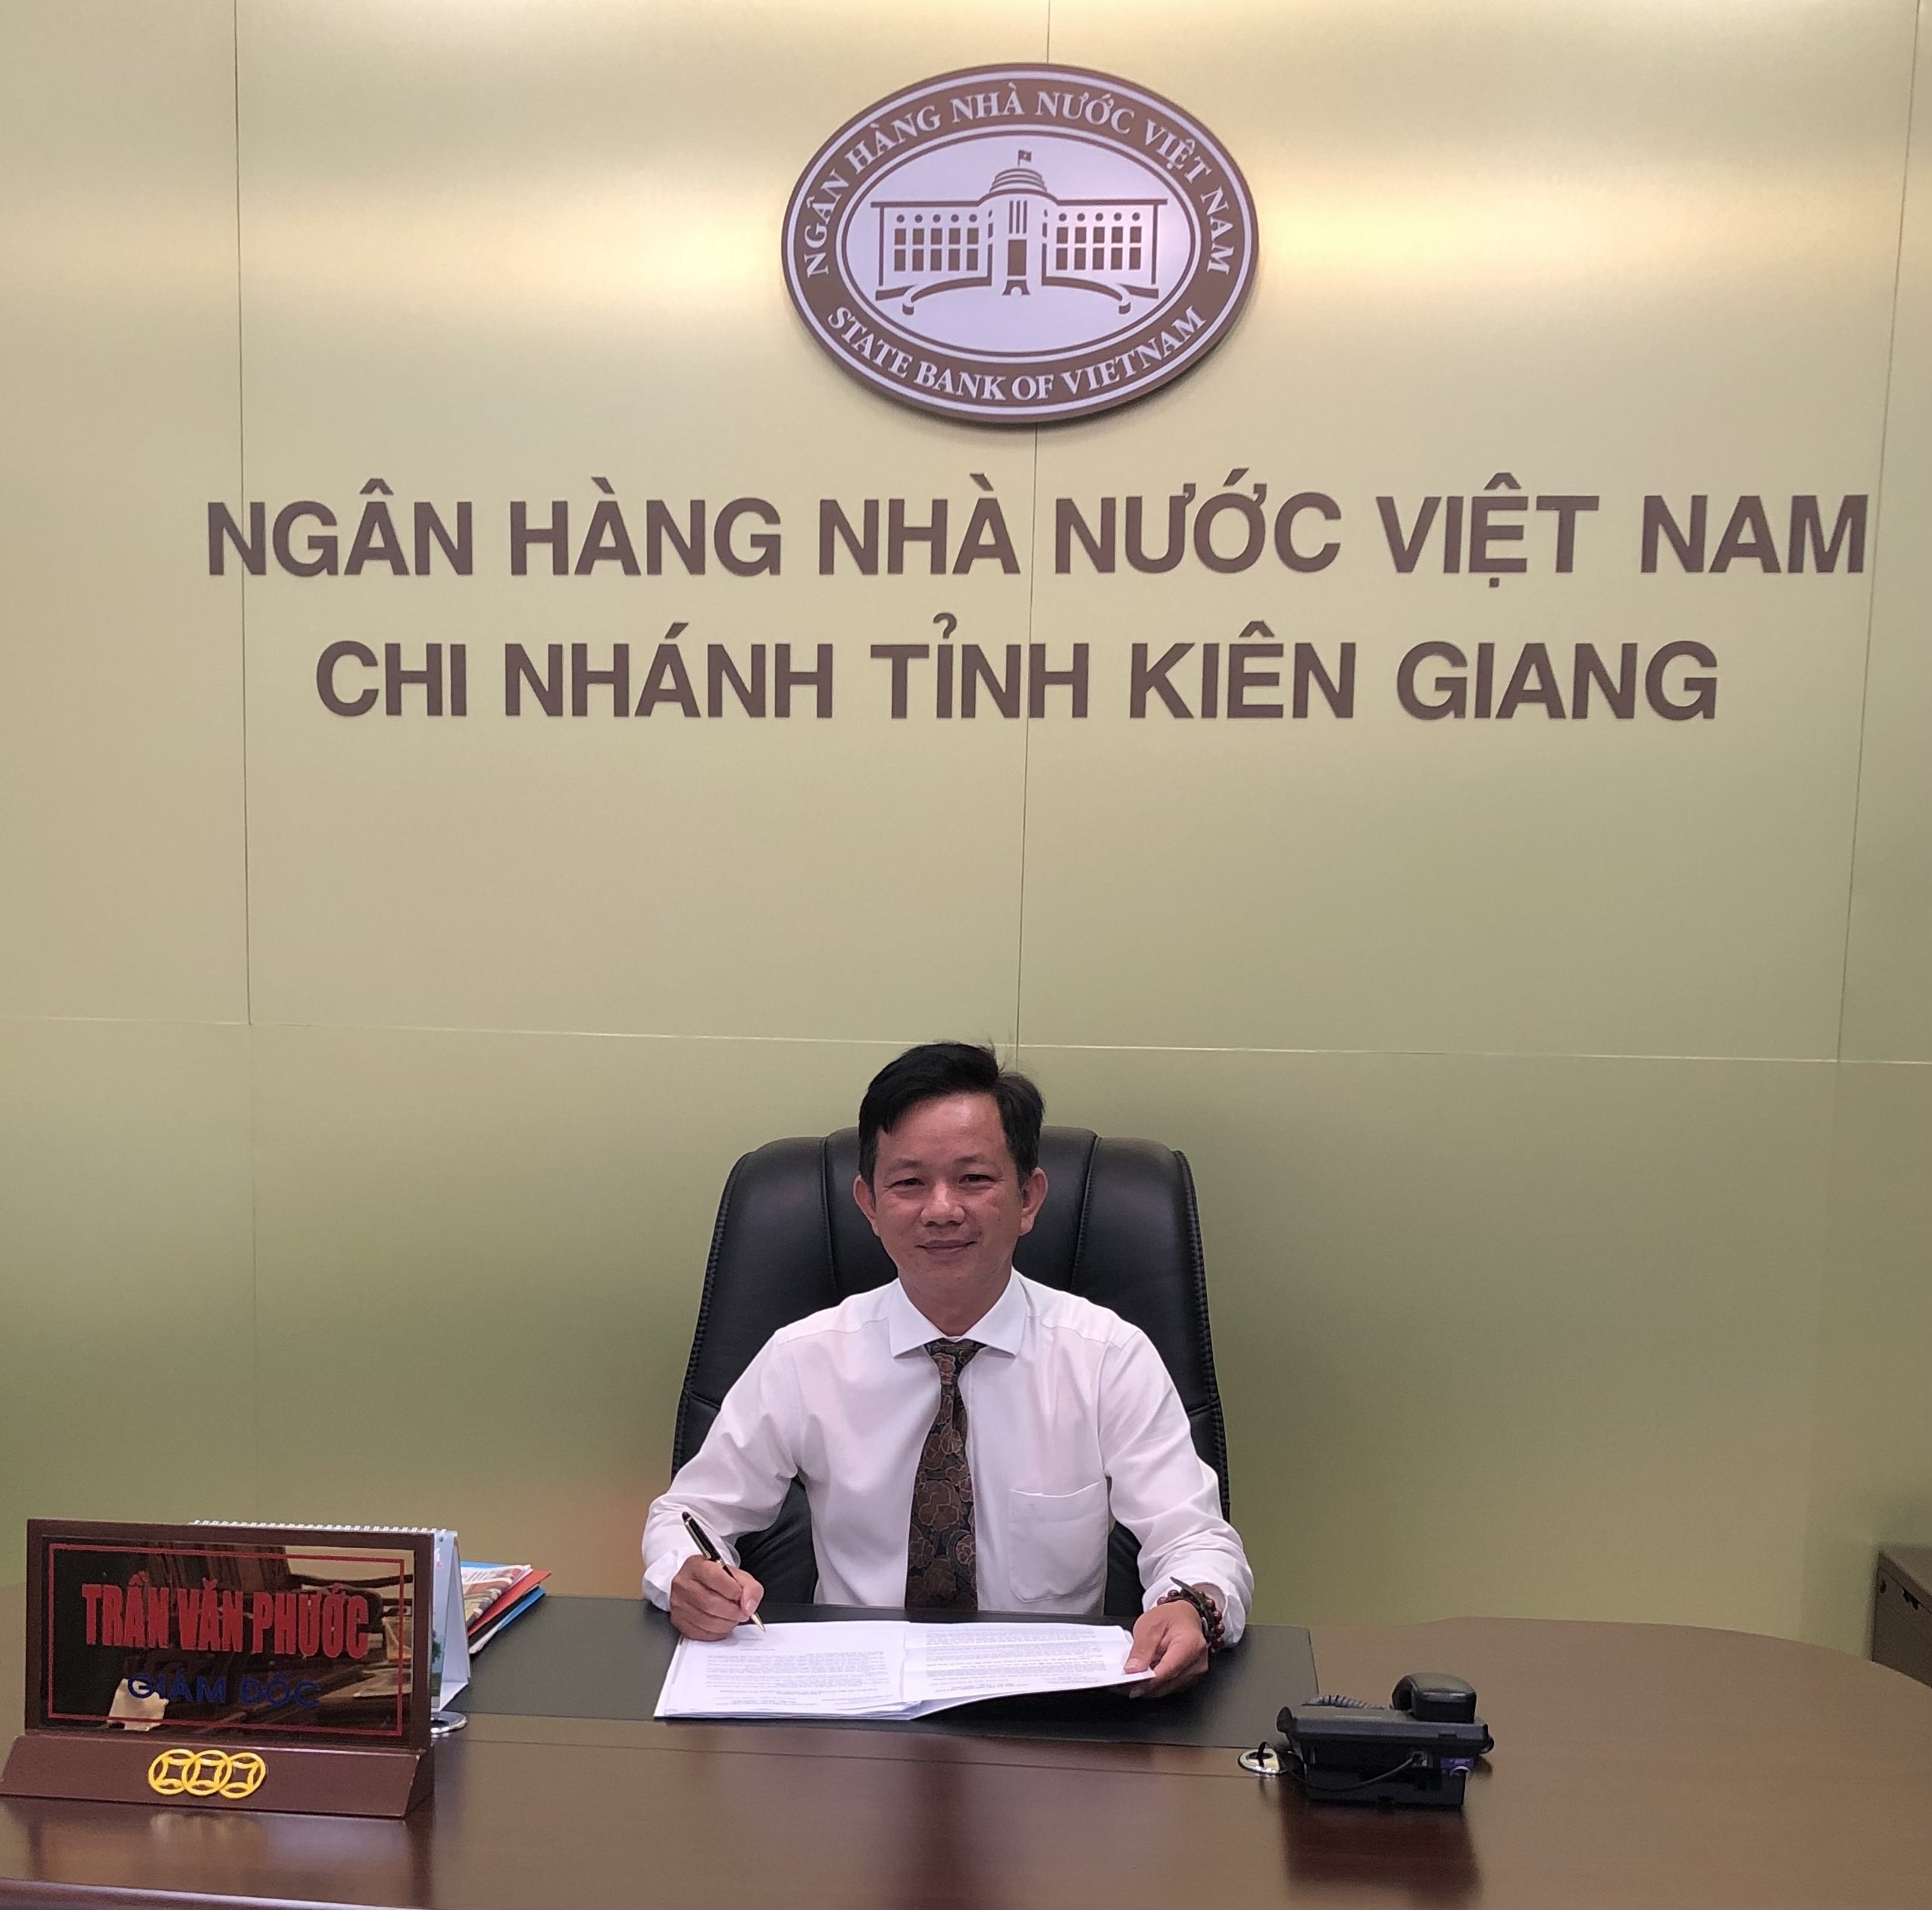 Thư chúc mừng của Ngân Hàng Nhà Nước Việt Nam - Chi nhánh tỉnh Kiên Giang nhân kỷ niệm 26 năm ngày thành lập KienlongBank